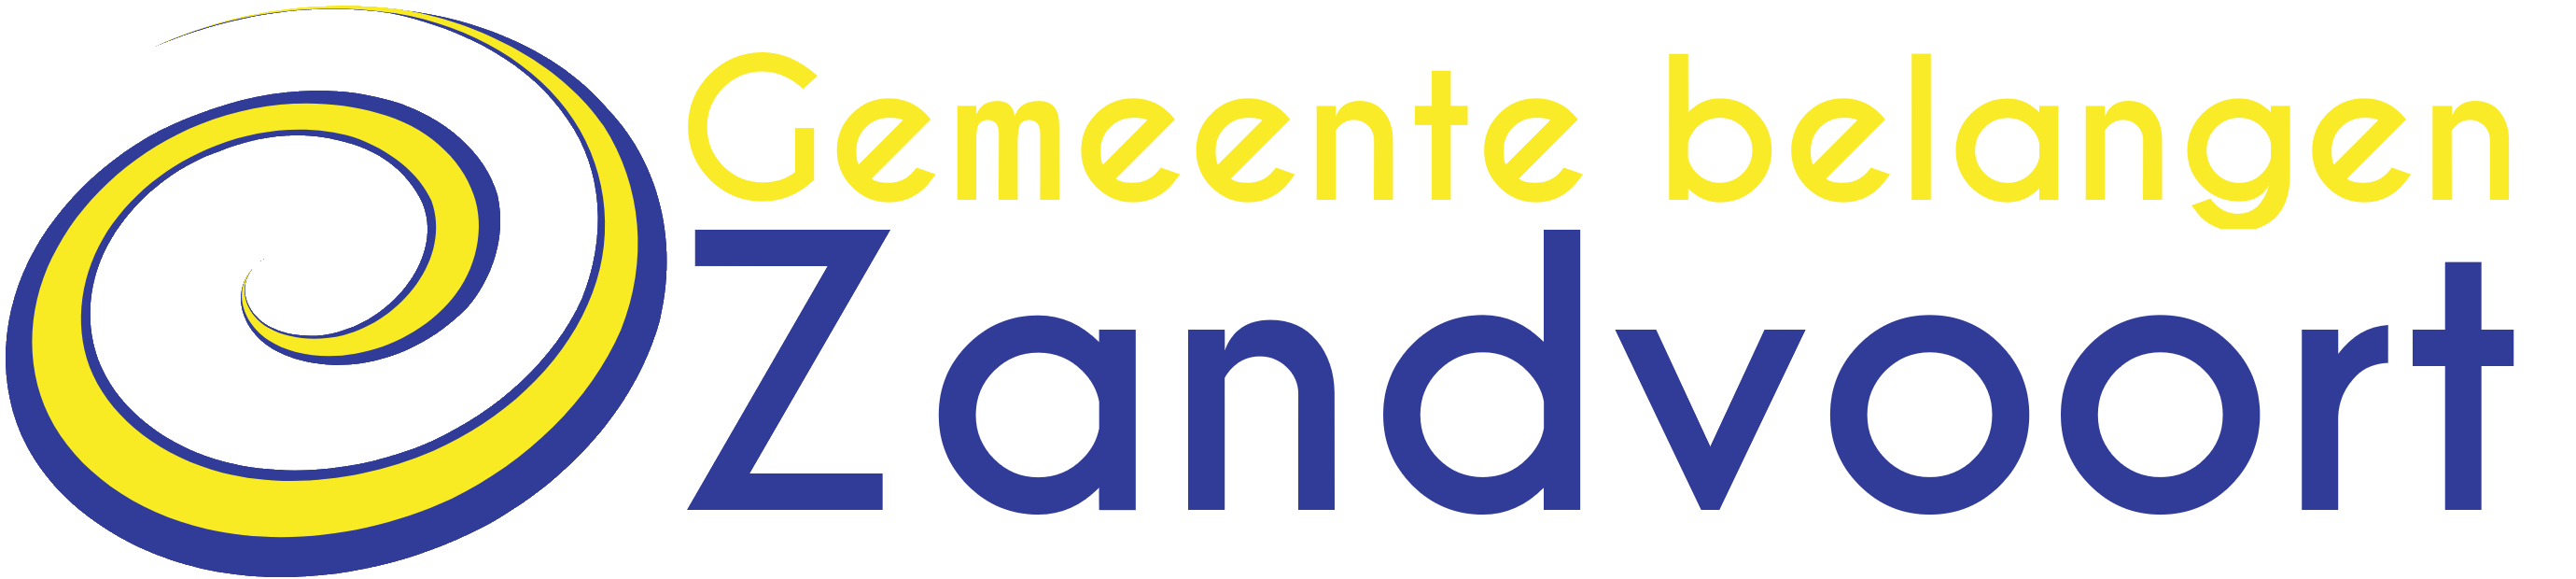 Gemeente belangen Zandvoort is een sociaal-liberale lokale partij in de gemeente Zandvoort